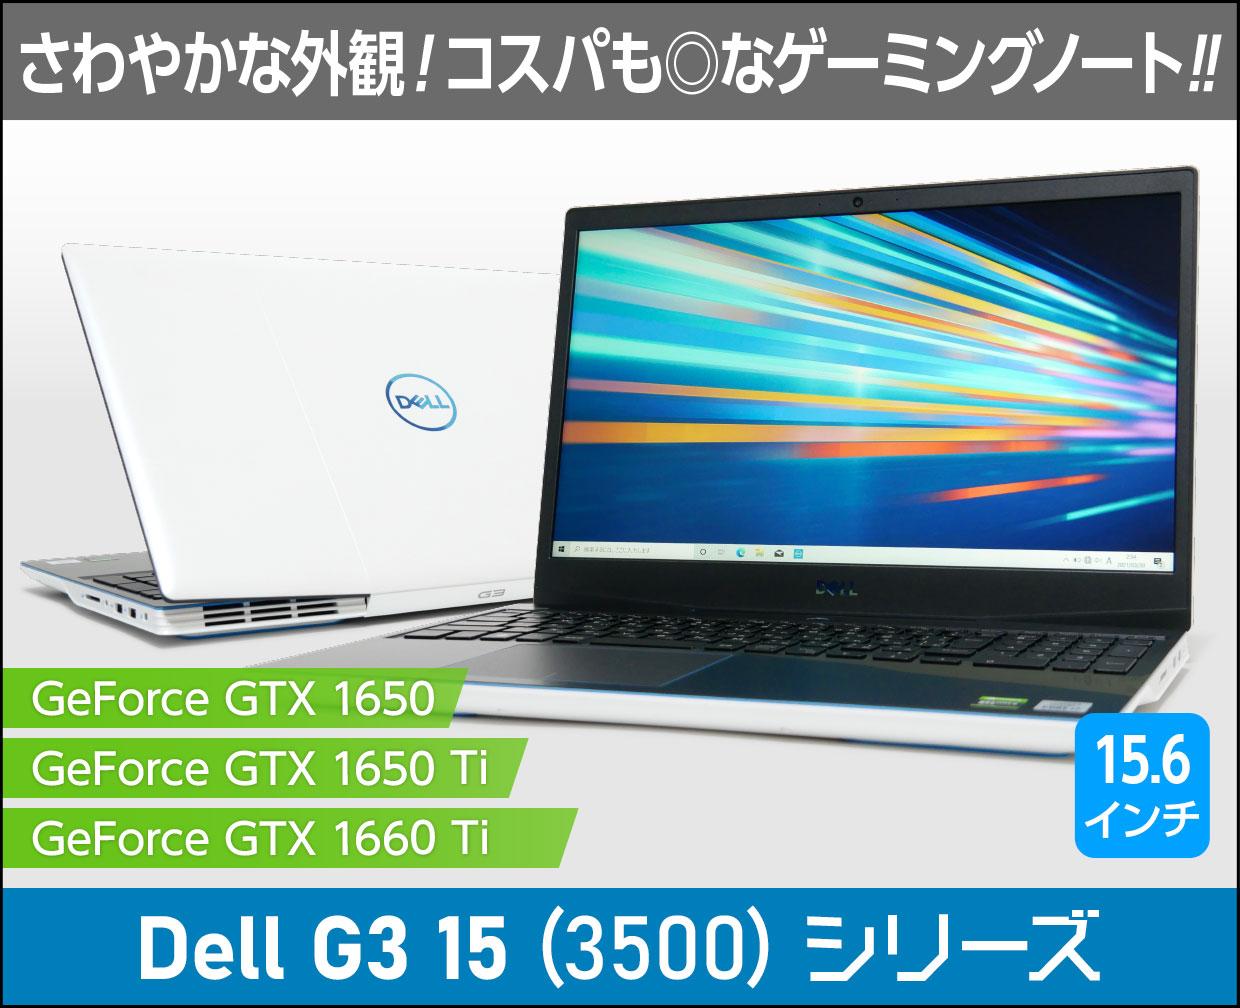 Dell G3 15 3500 ゲーミングノートPC 1660Ti